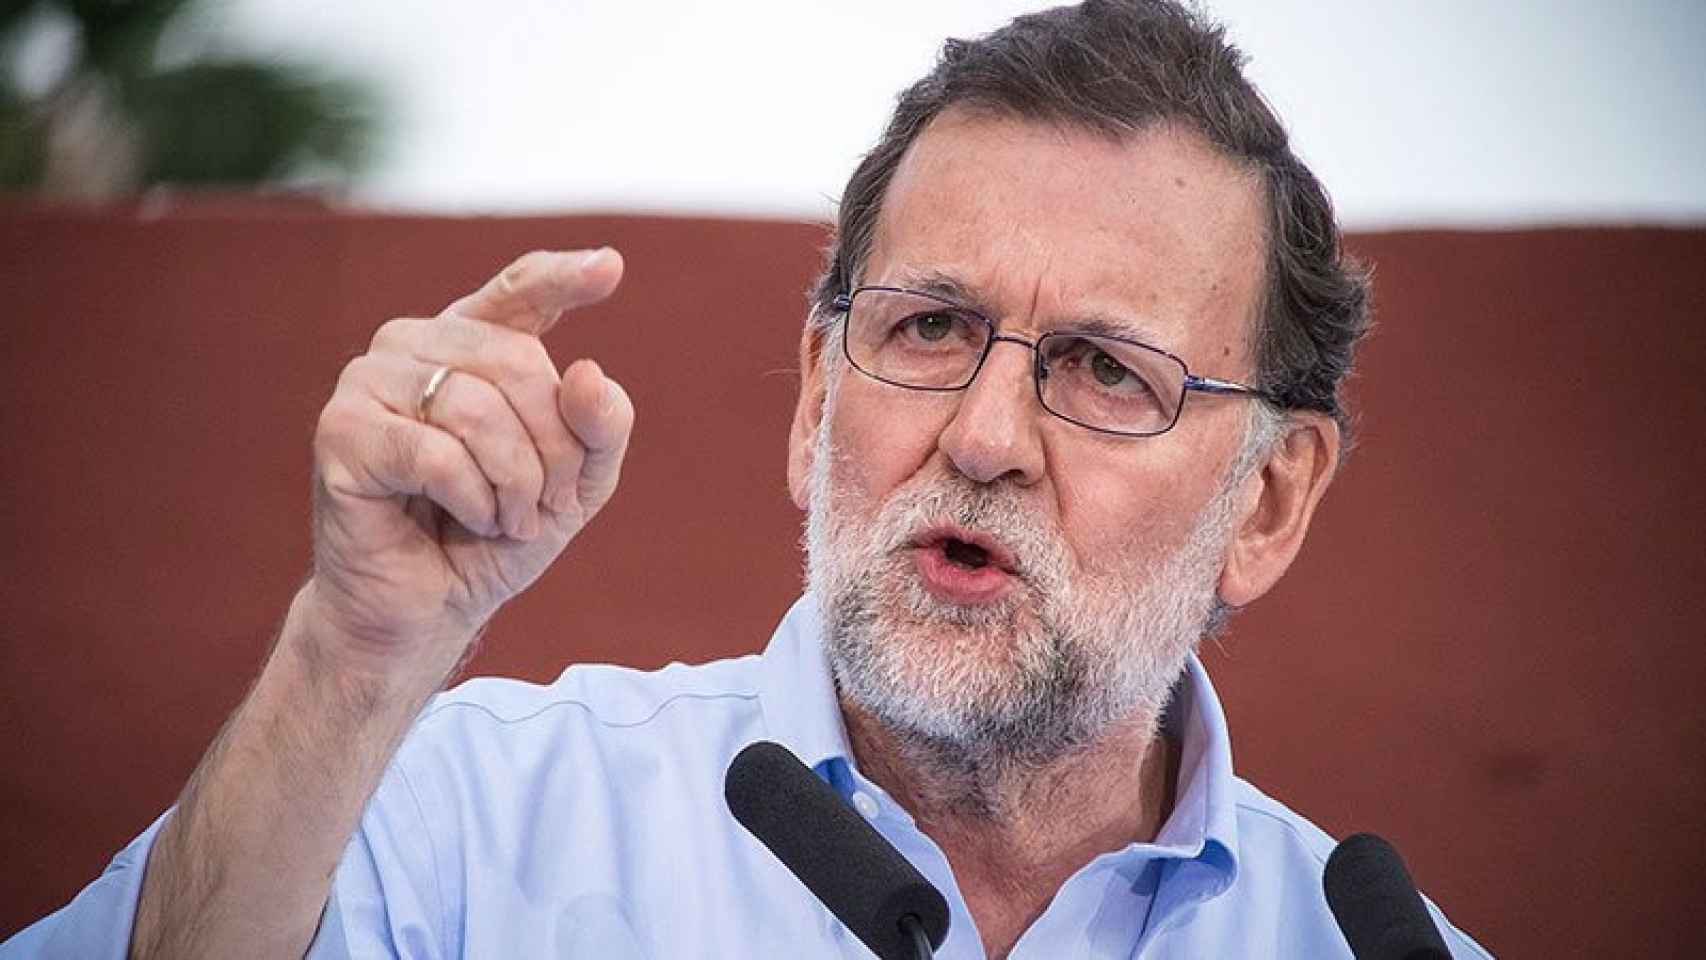 El candidato a la presidencia para el PP, Mariano Rajoy, el sábado durante un acto de campaña en Las Palmas de Gran Canaria.